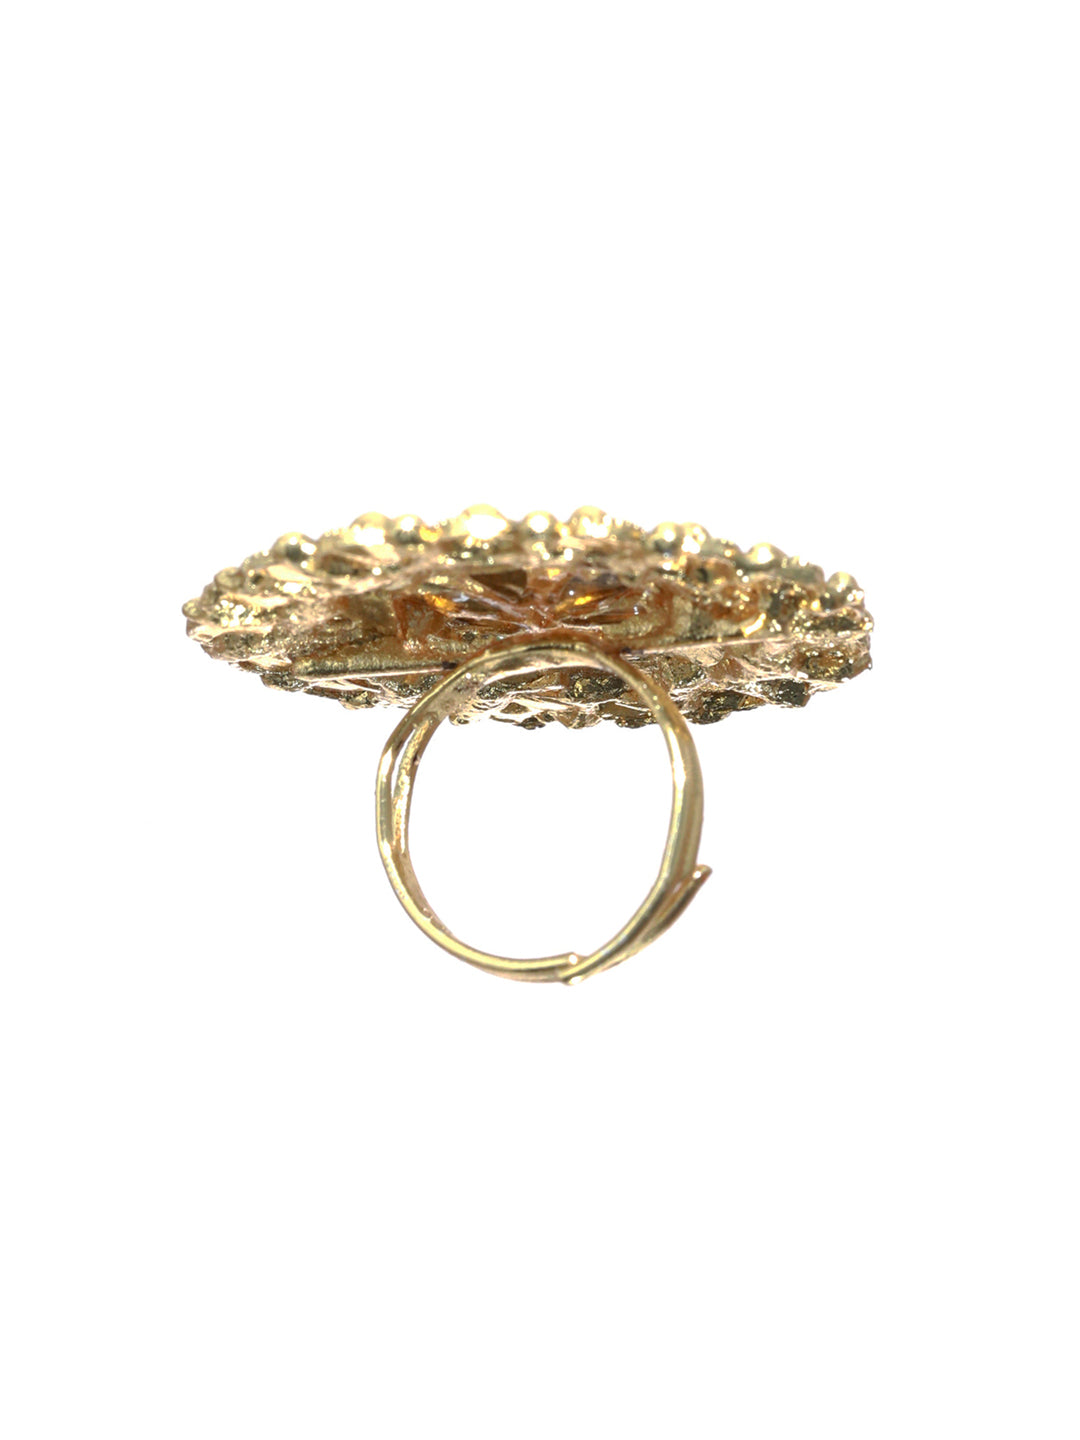 Priyaasi Gold Plated Green Meenakari Floral Ring